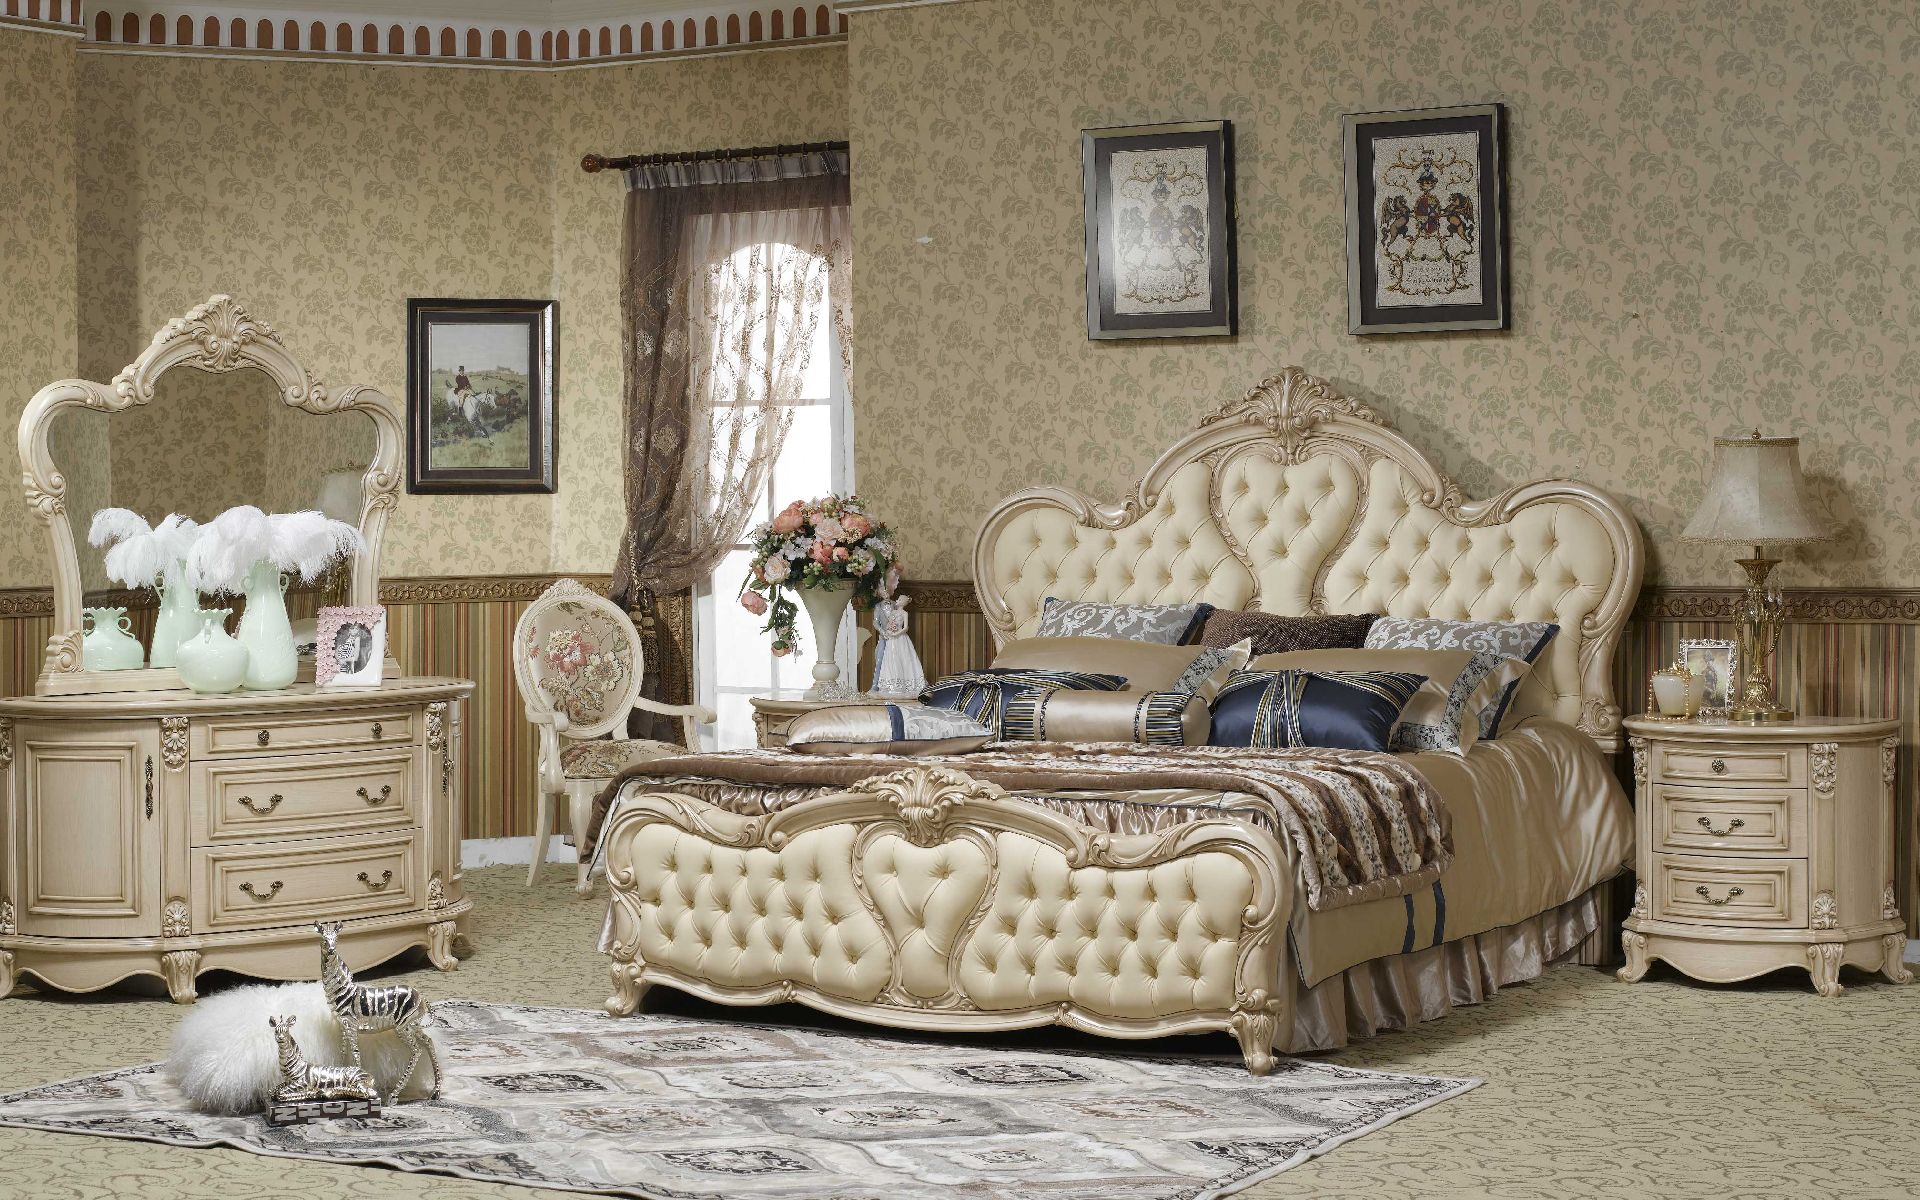 tapete antik,schlafzimmer,möbel,zimmer,bett,bettrahmen